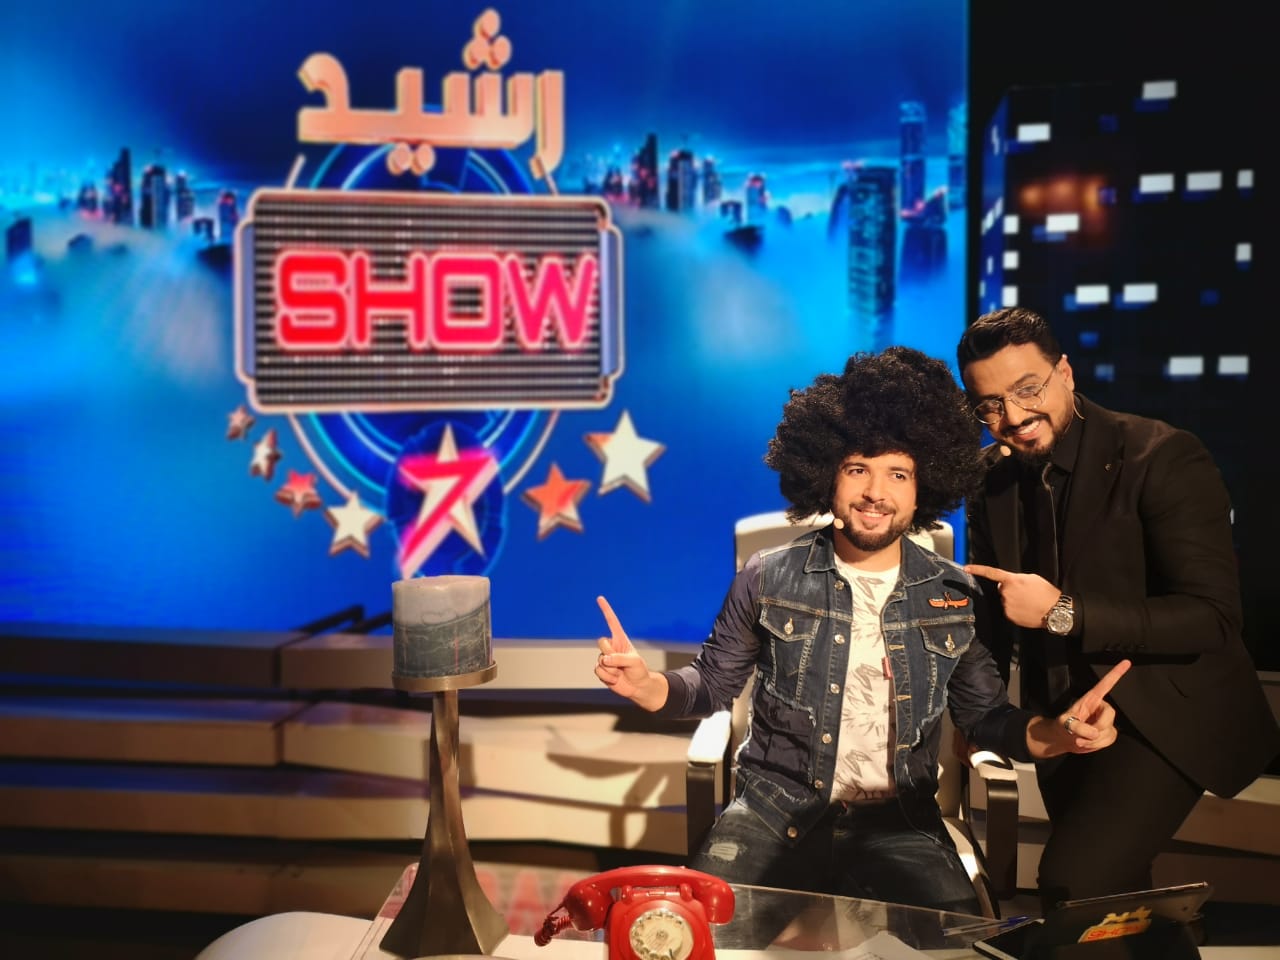 صورة الدوزي يكرم الصم والبكم في حلقة استثنائية من برنامج “رشيد شو”